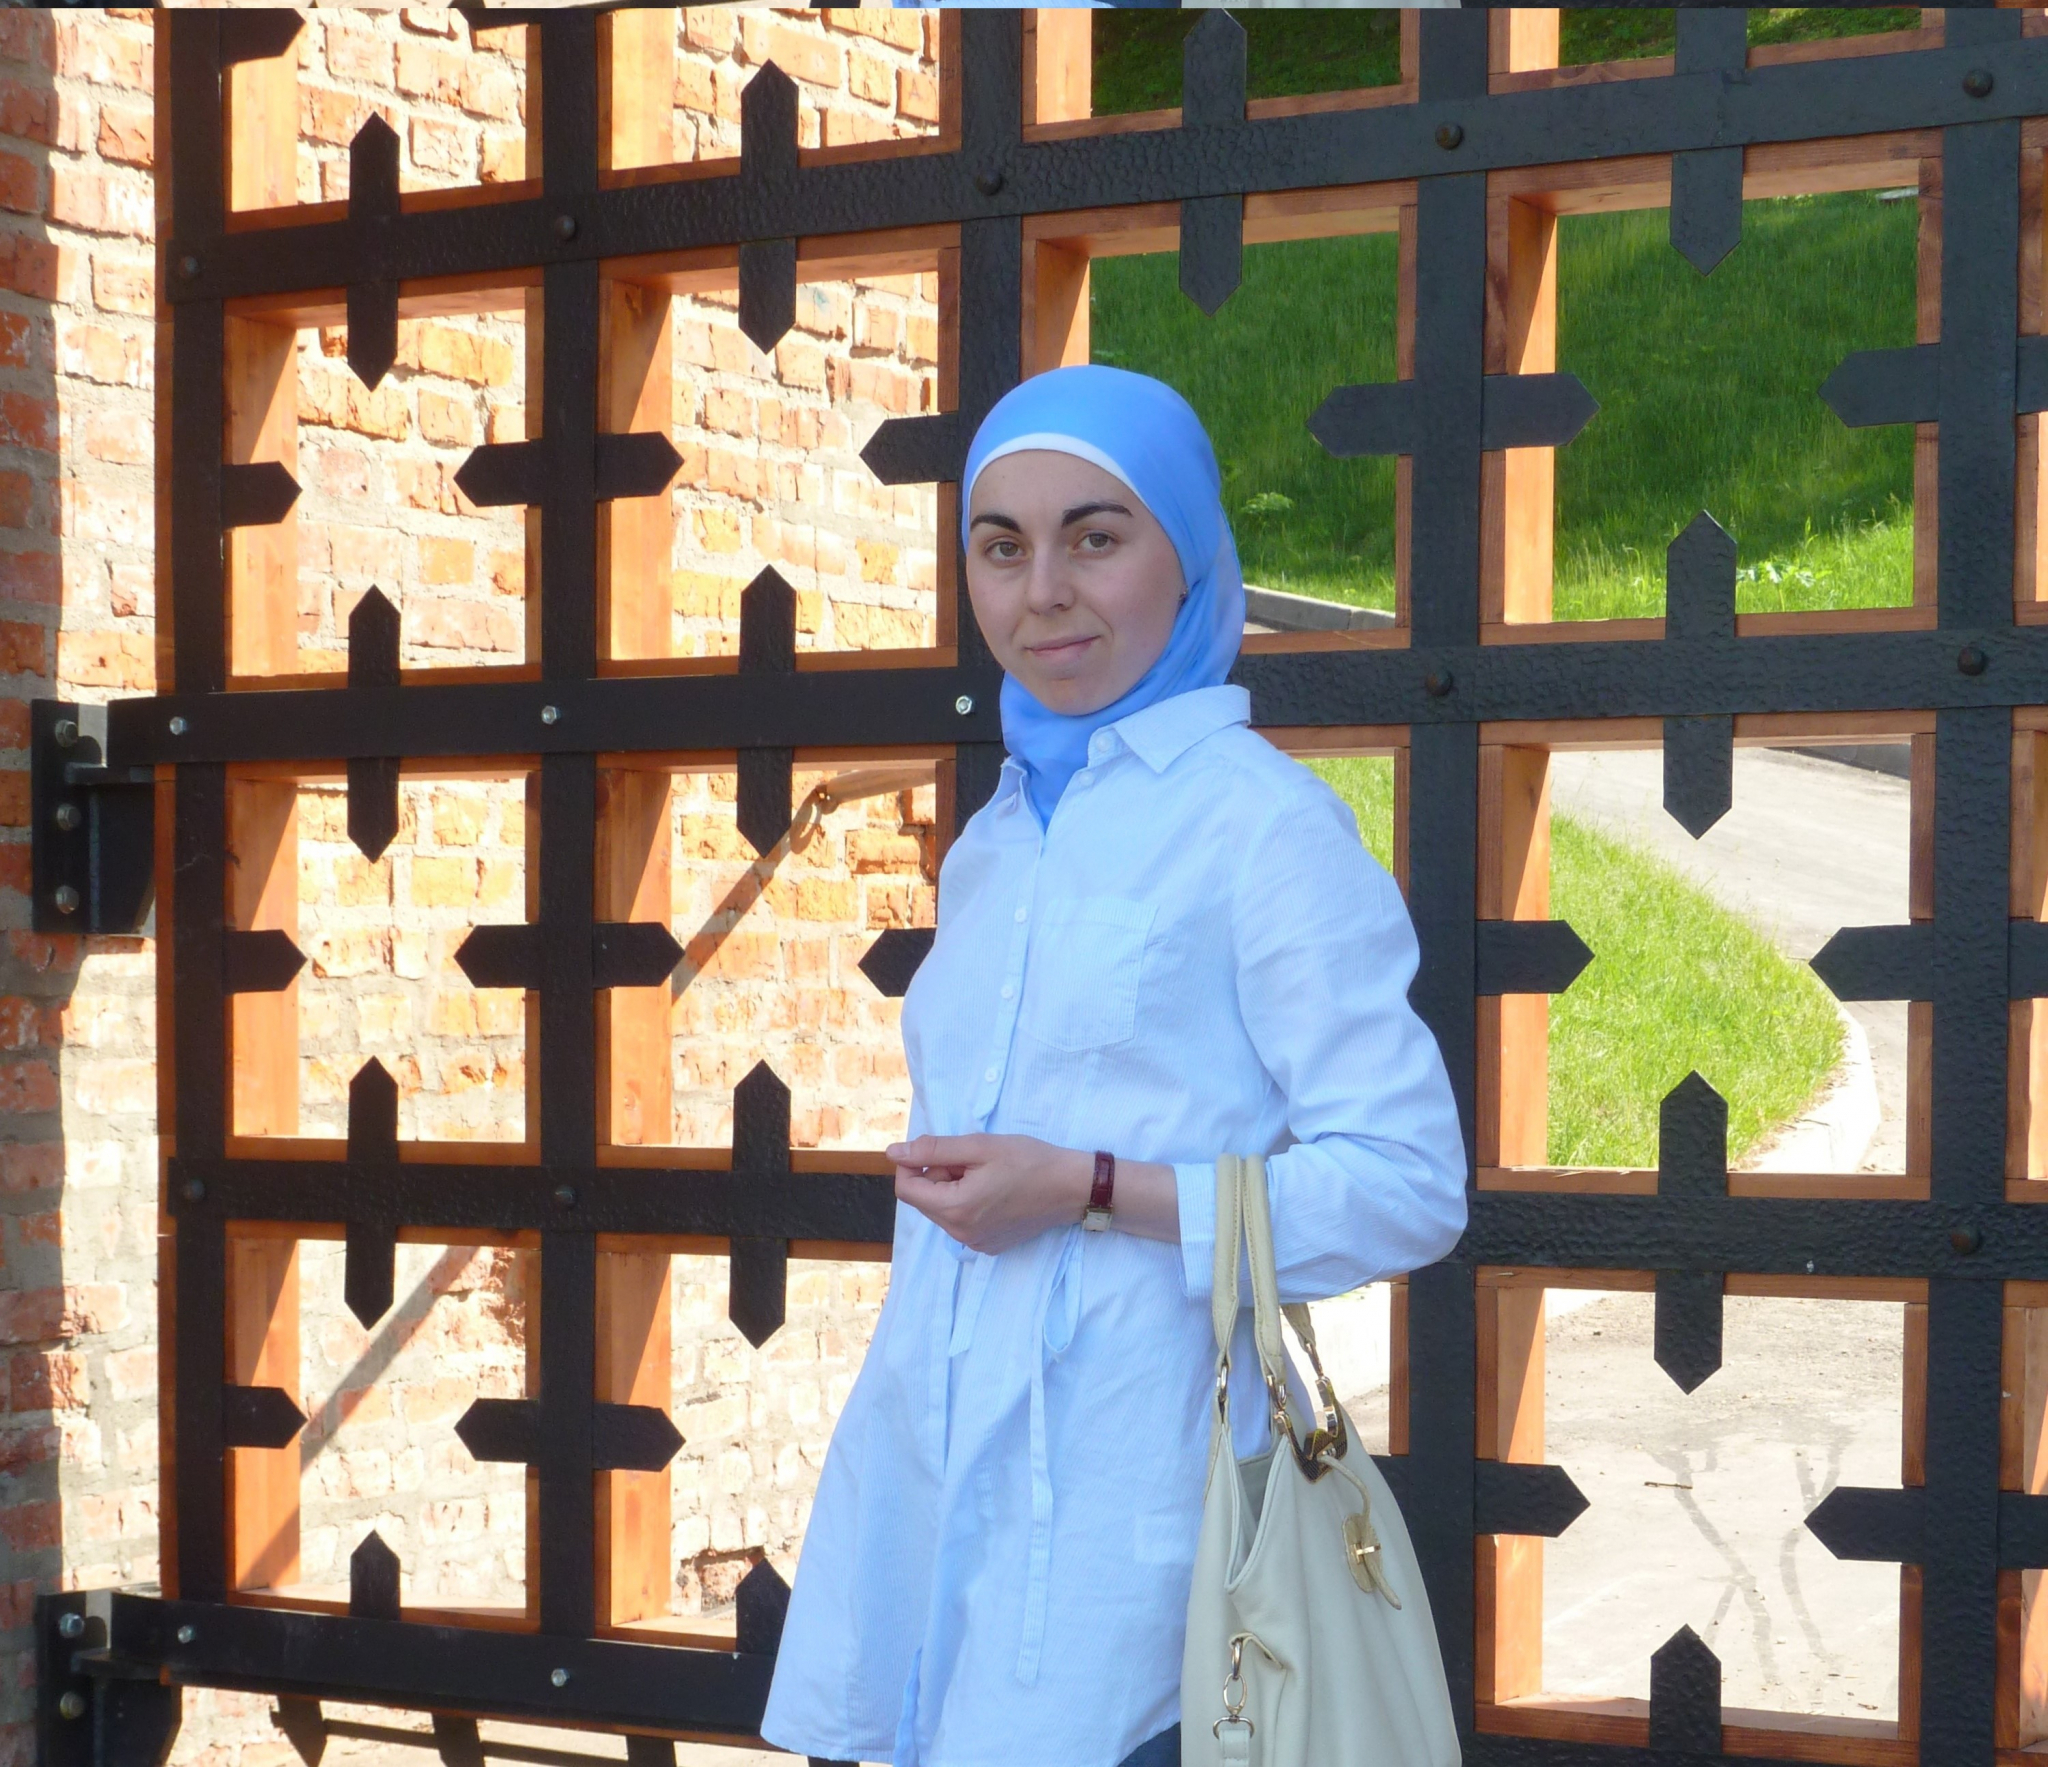 Нижегородская мусульманка: "Меня перестало заботить, что многие люди косо на меня смотрят"